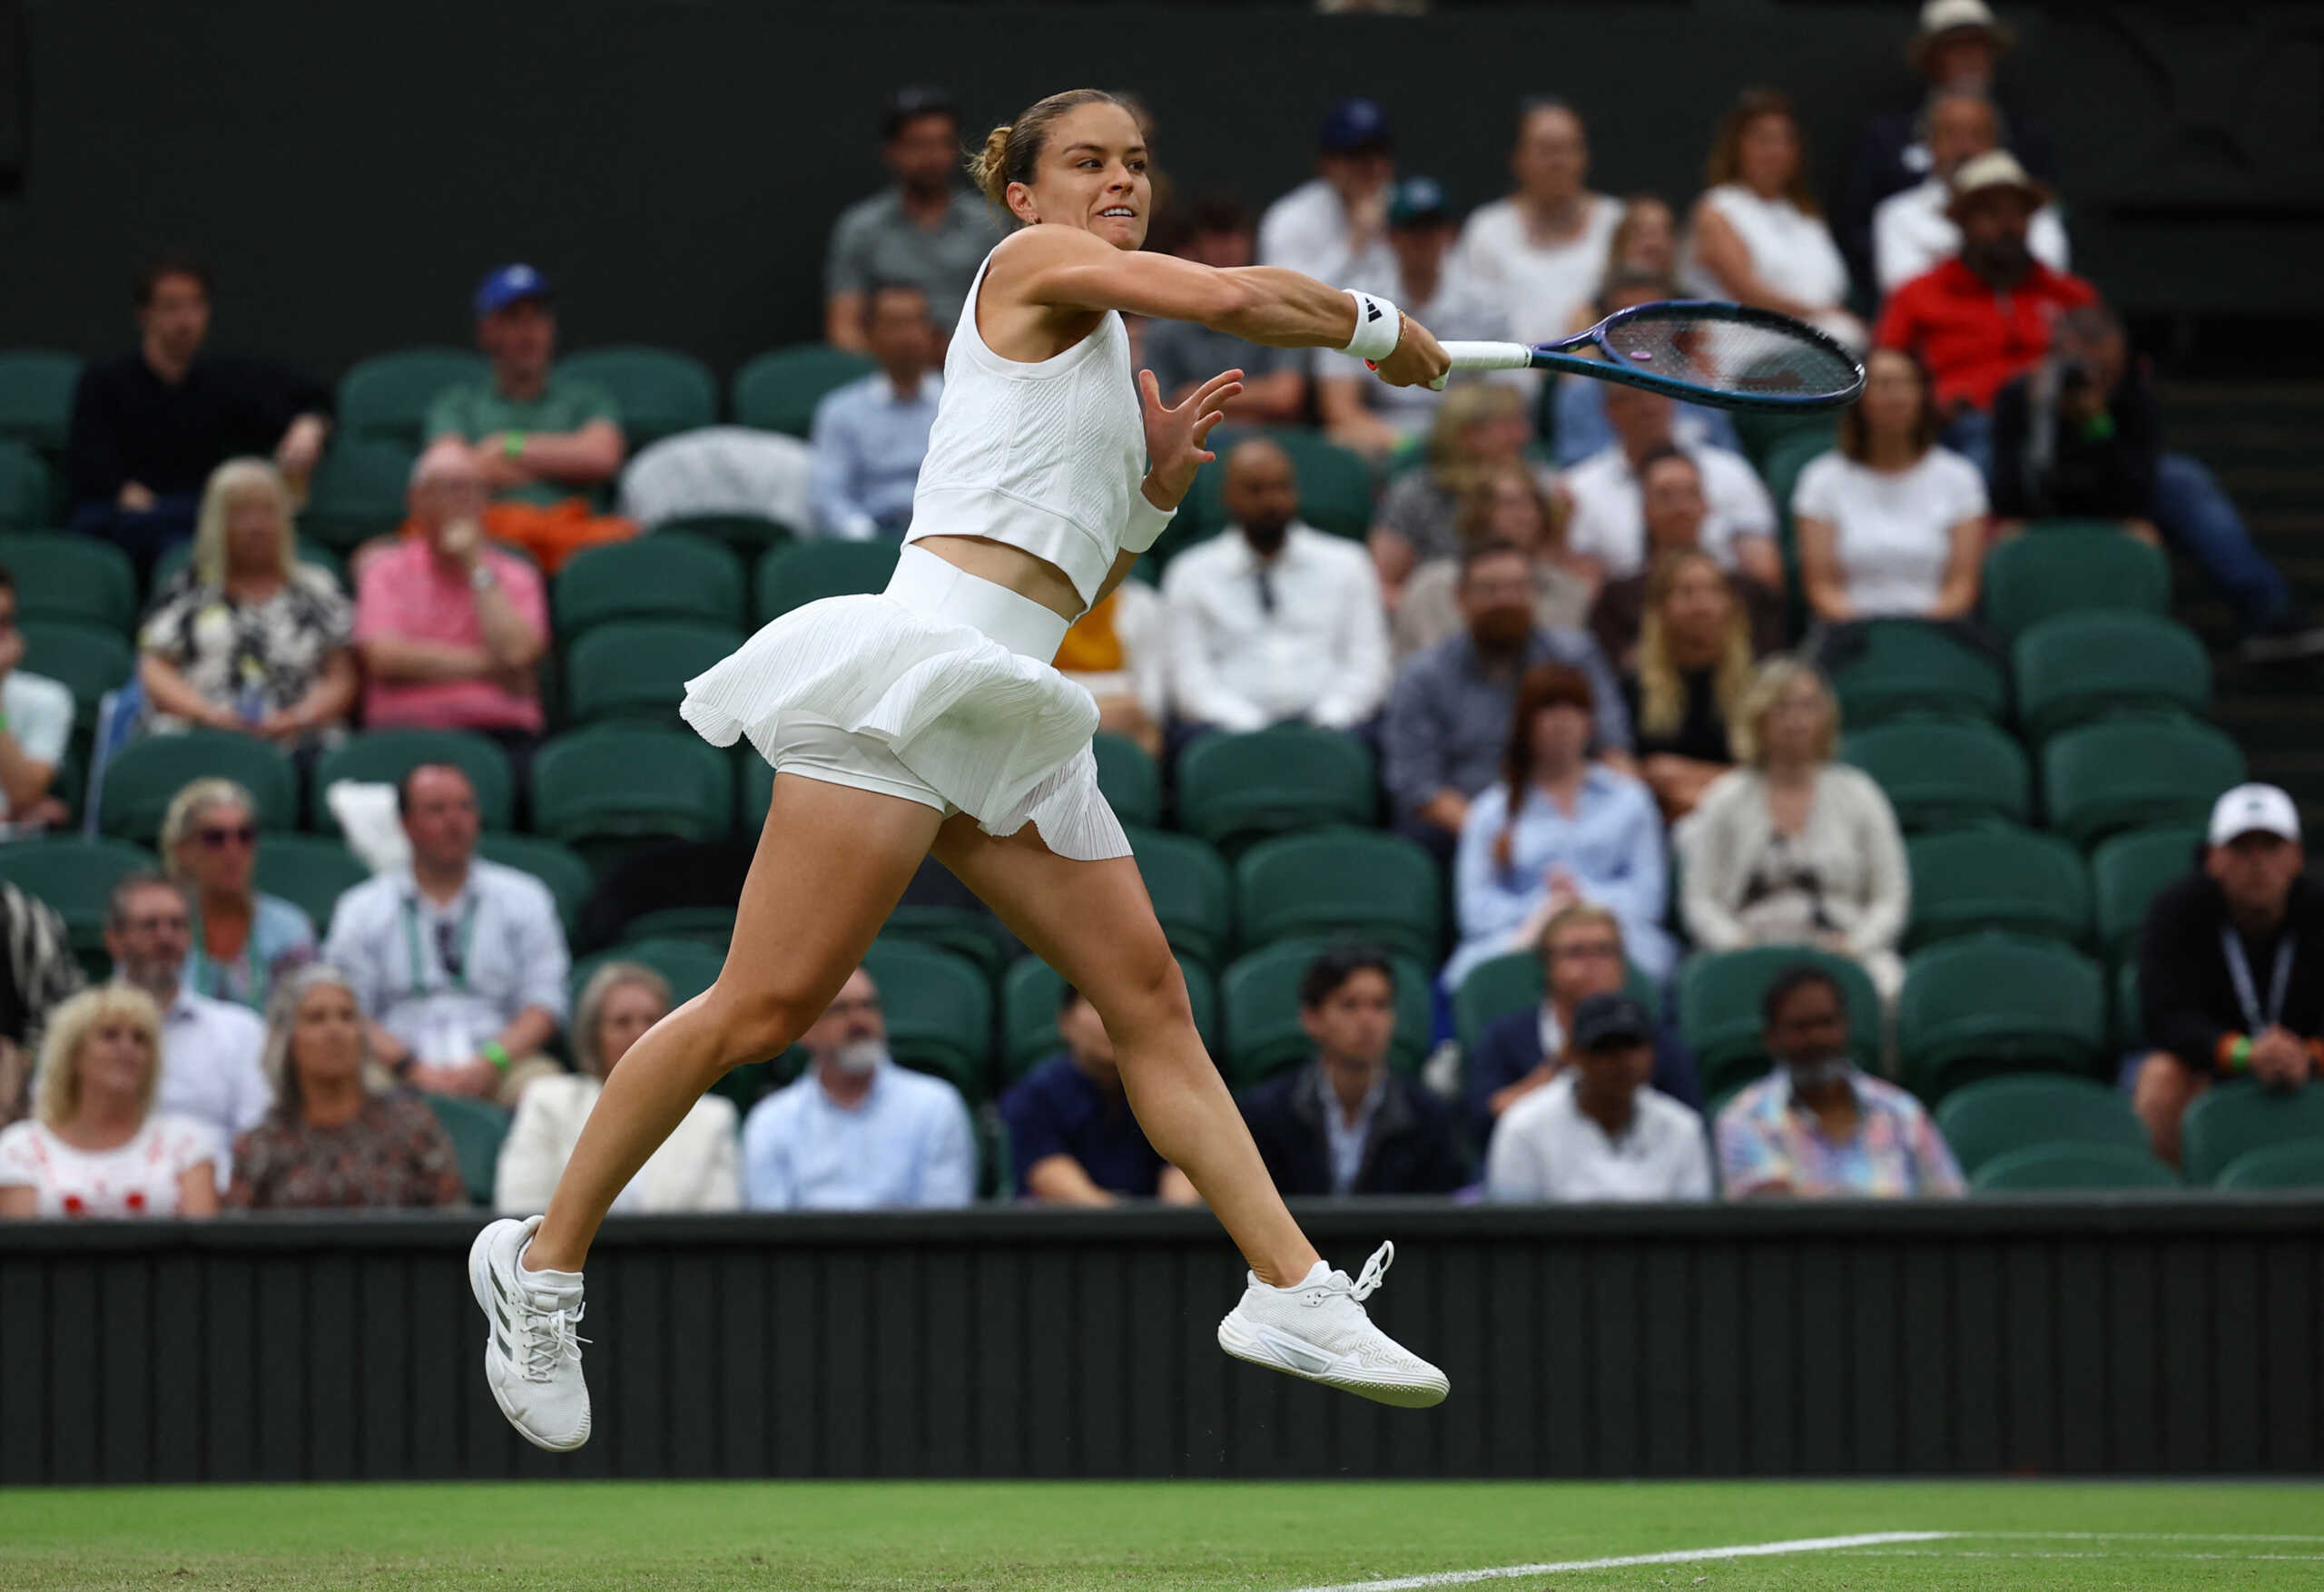 Έμμα Ραντουκάνου – Μαρία Σάκκαρη 2-0: Ήττα και αποκλεισμός για την Ελληνίδα τενίστρια στο Wimbledon